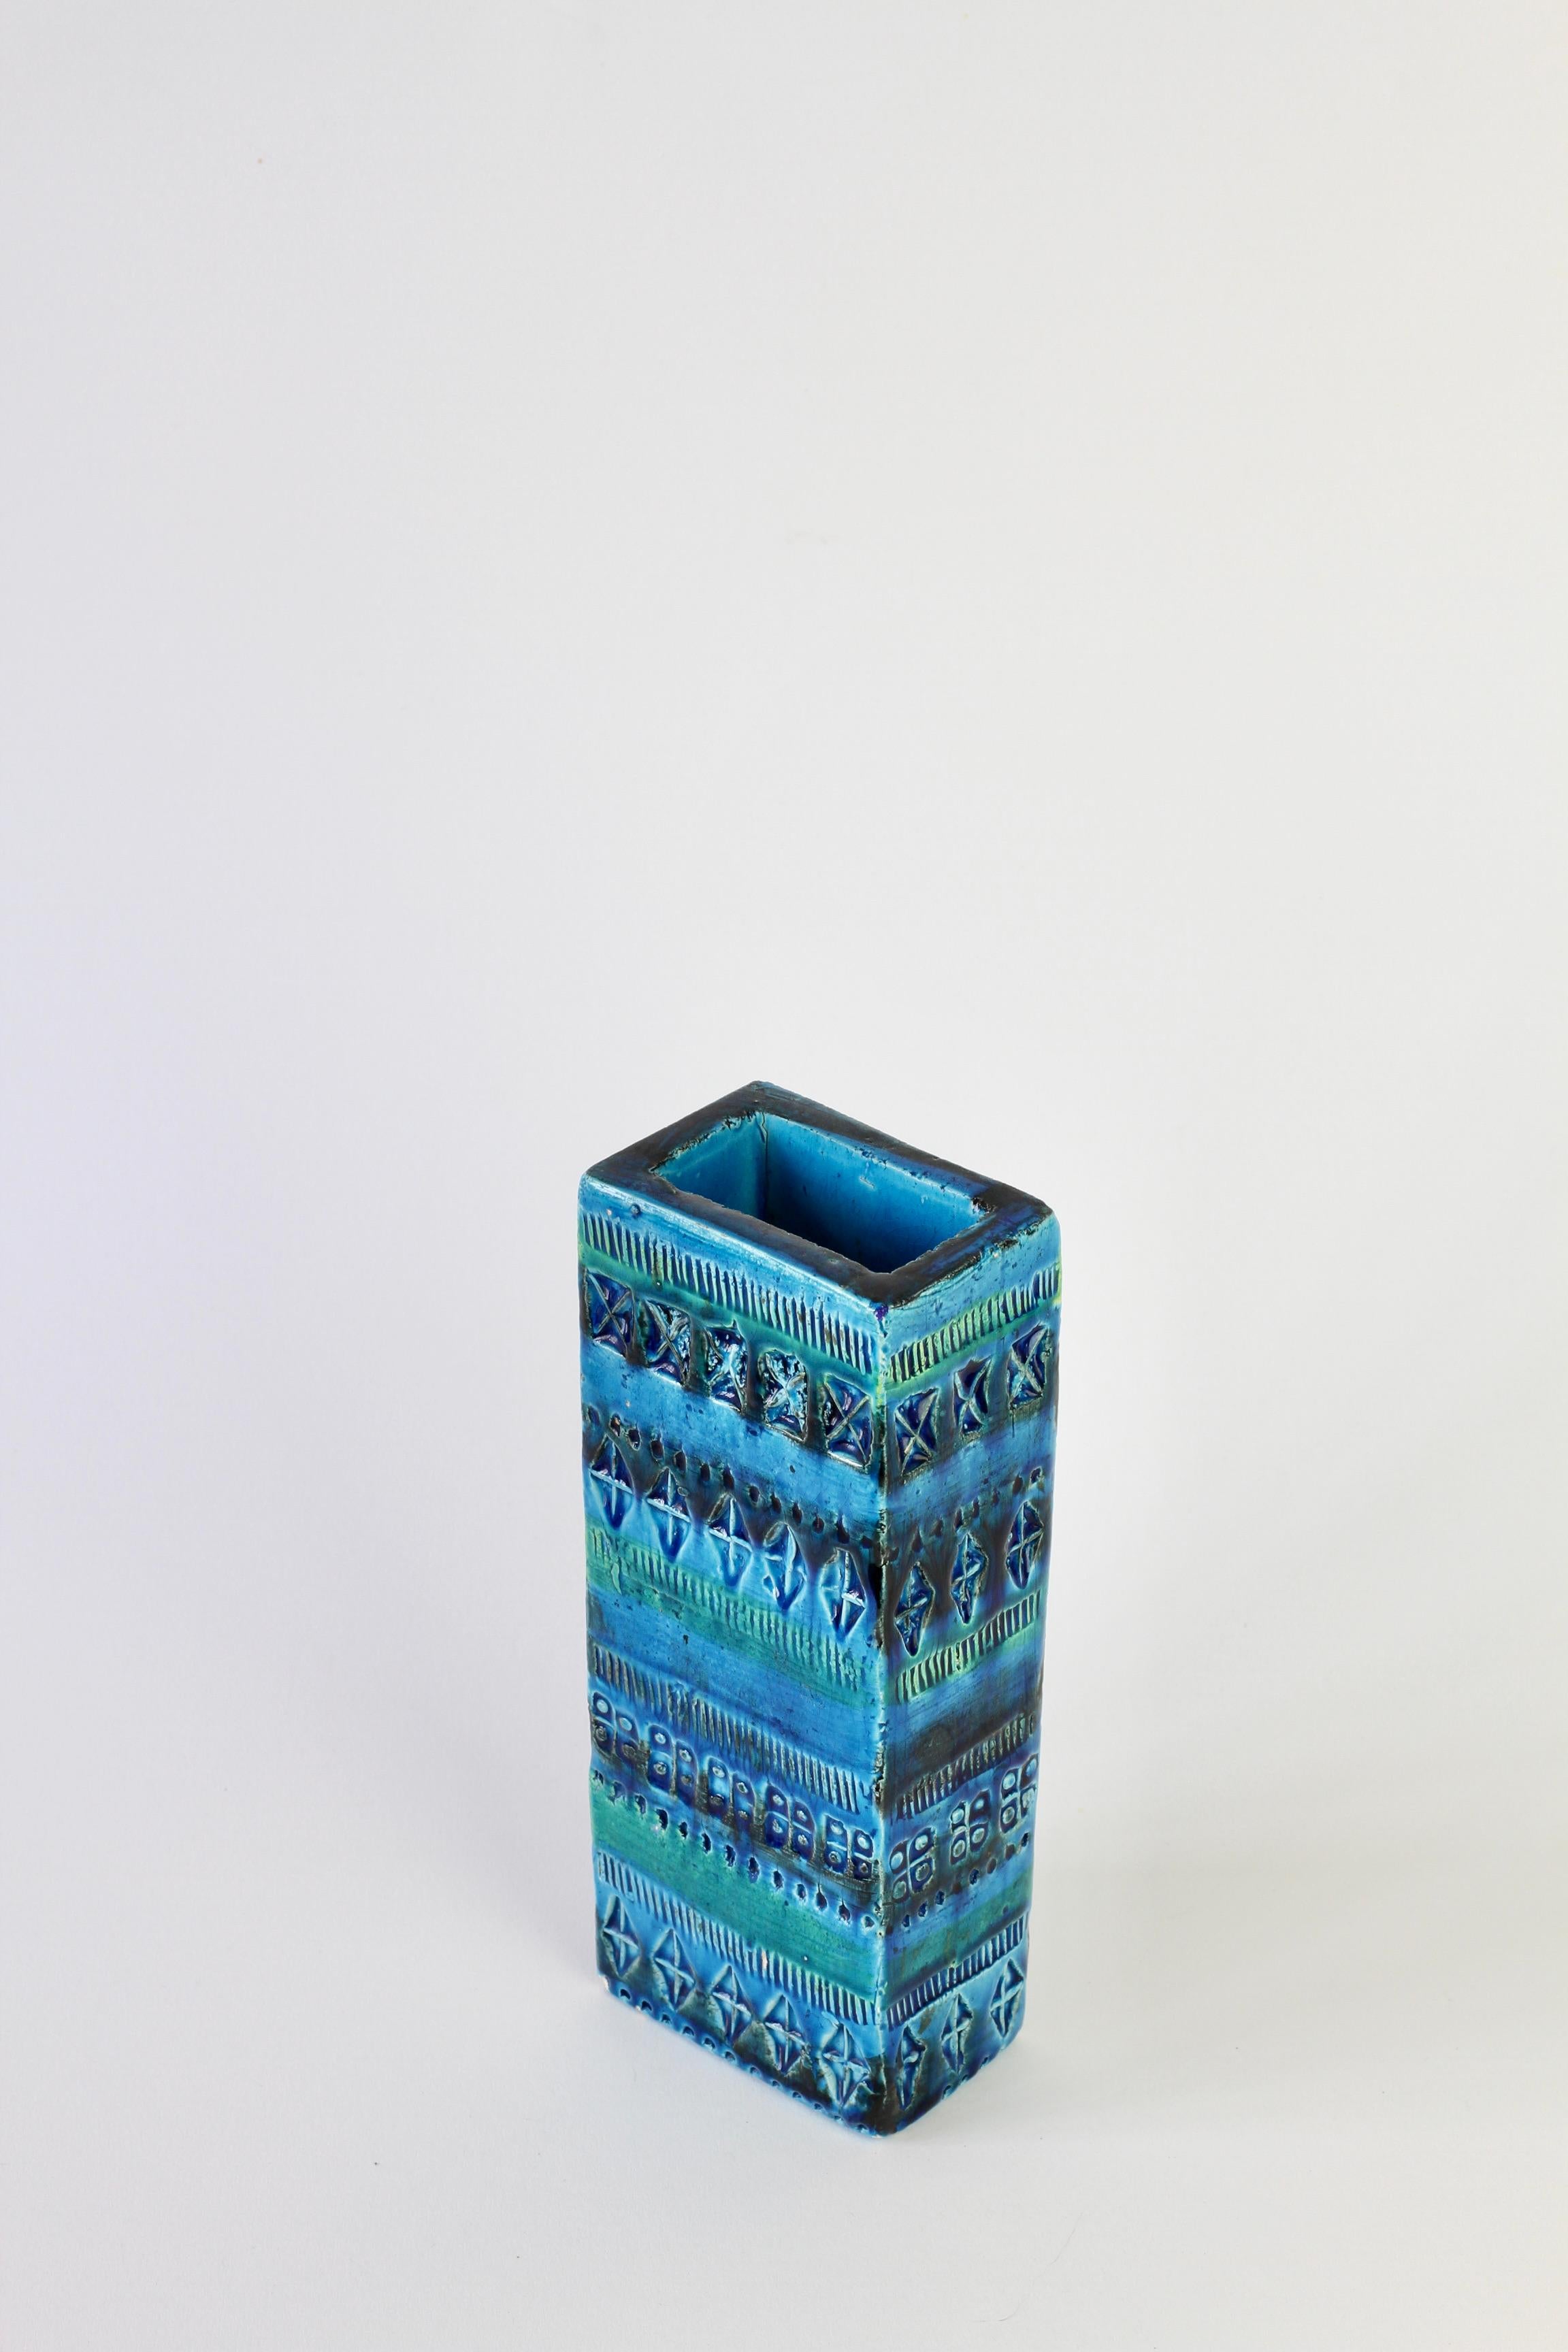 Schöne hohe geprägte Vase in leuchtendem 'Rhimini'-Blau und Türkis von Aldo Londi für Bitossi, um 1968. Ein großes. Stück Vintage, Mitte des Jahrhunderts handgemachte italienische Keramik. 

Formnummer 727/21.

Wir haben noch mehr seltene